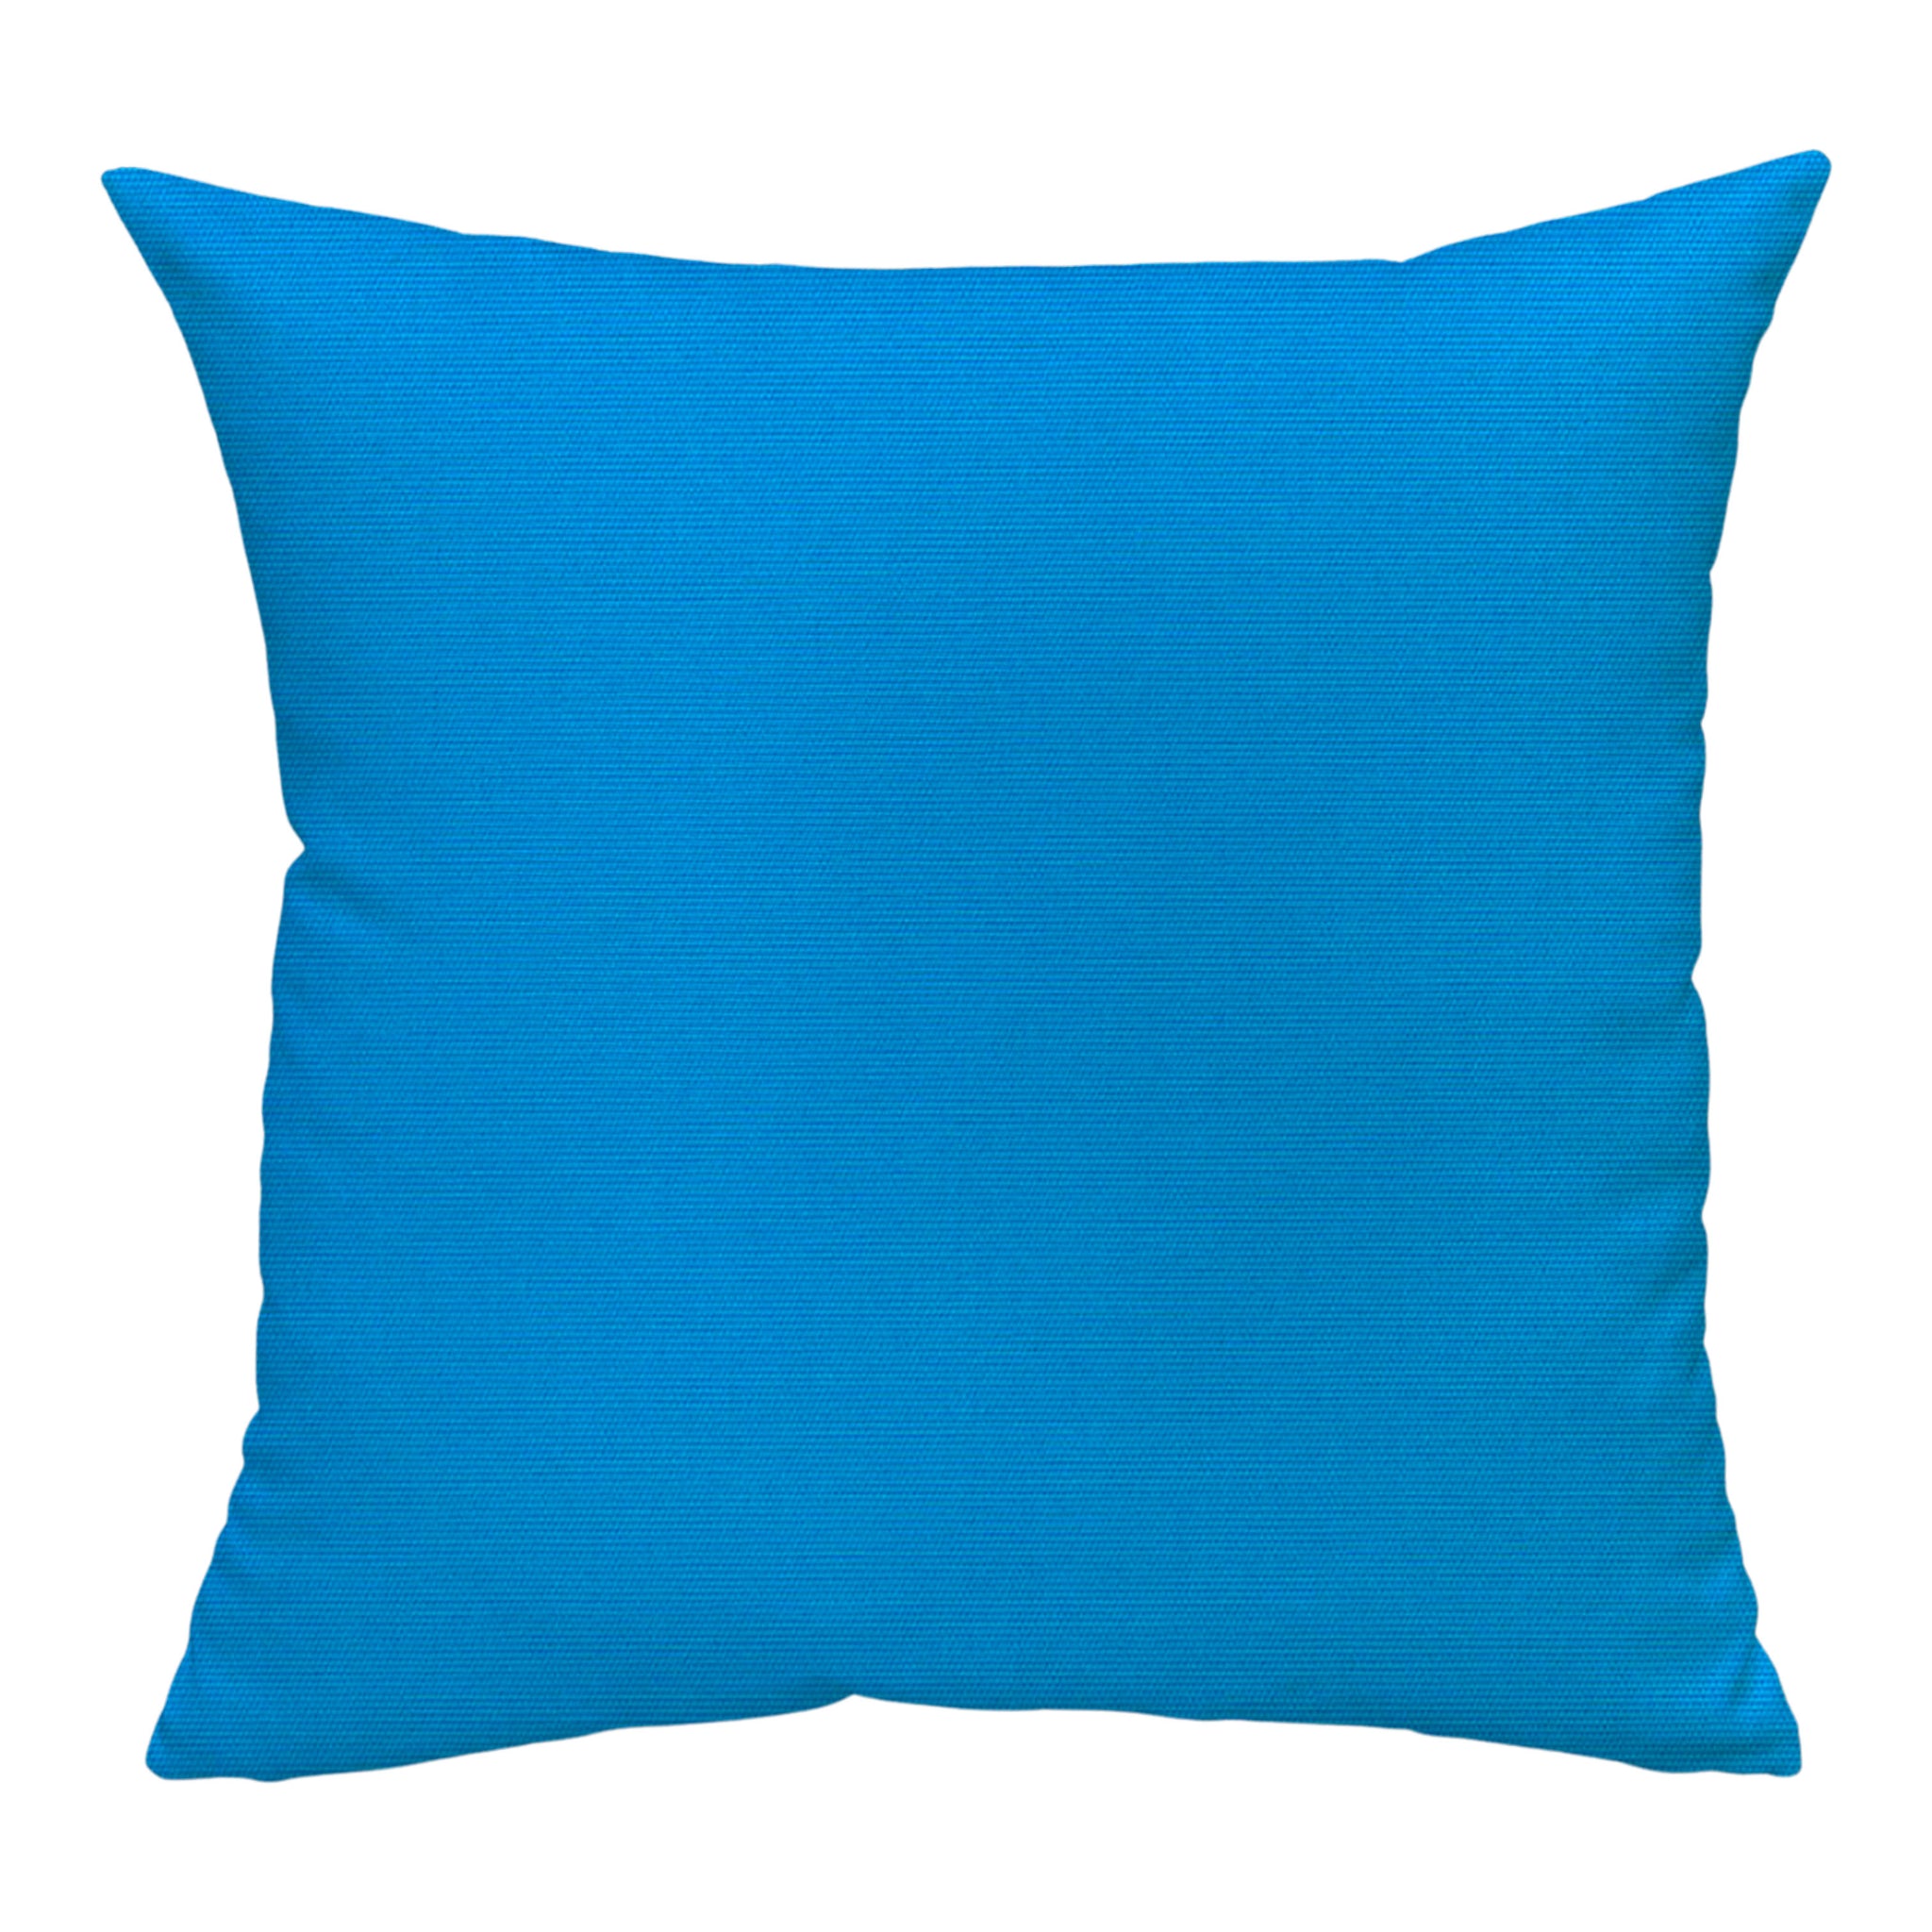 Sunbrella® Canvas Pillow Cover in Pacific Blue